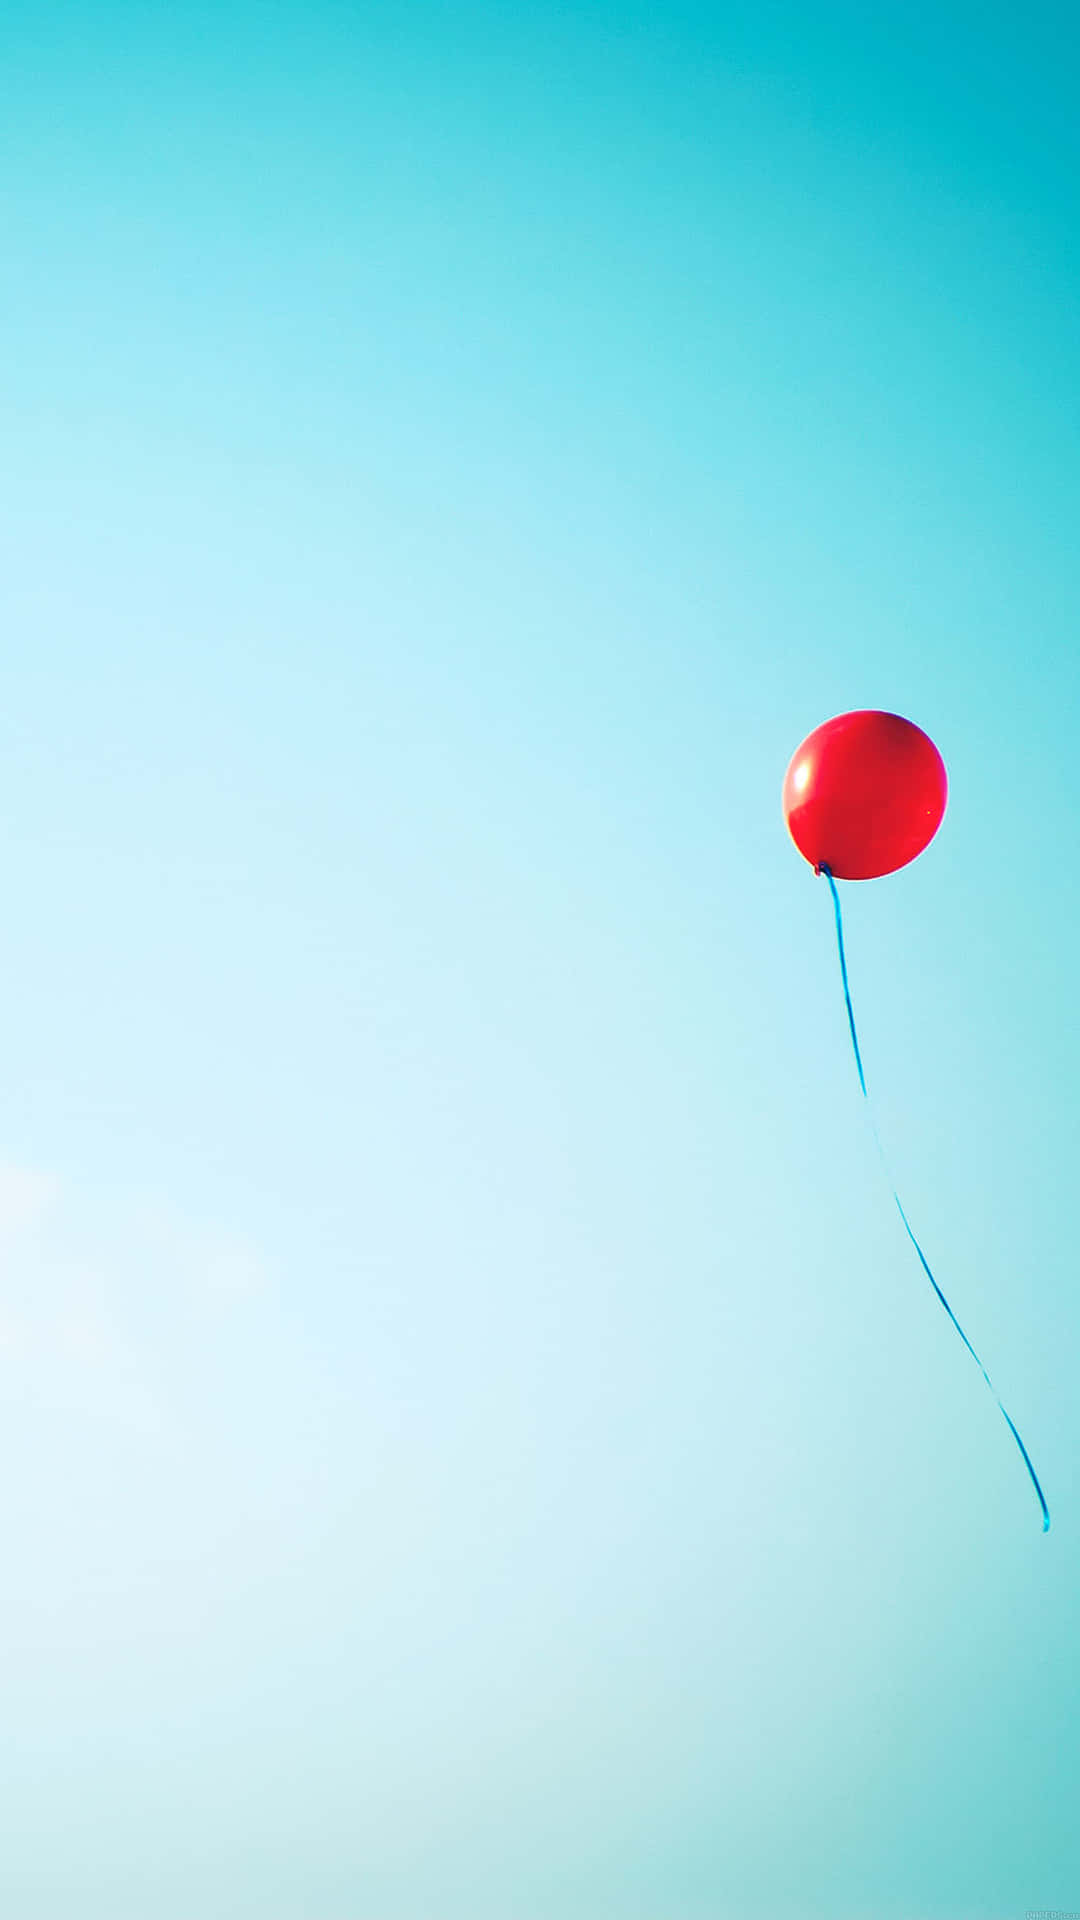 Hintergrundmit Luftballons, Einzelner Roter Ballon Fliegt.